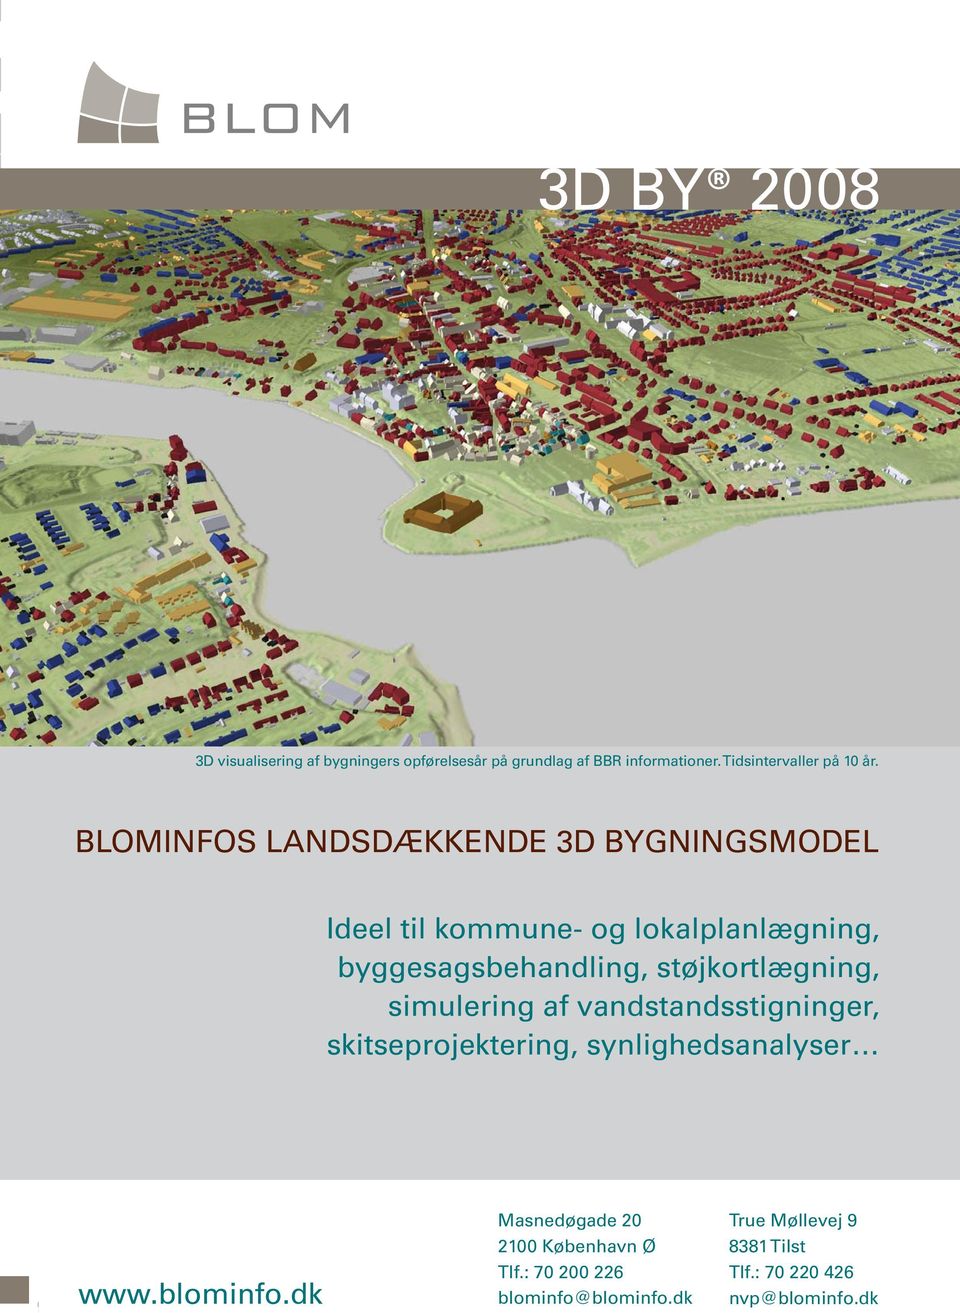 simulering af vandstandsstigninger, skitseprojektering, synlighedsanalyser www.blominfo.dk geoforum.